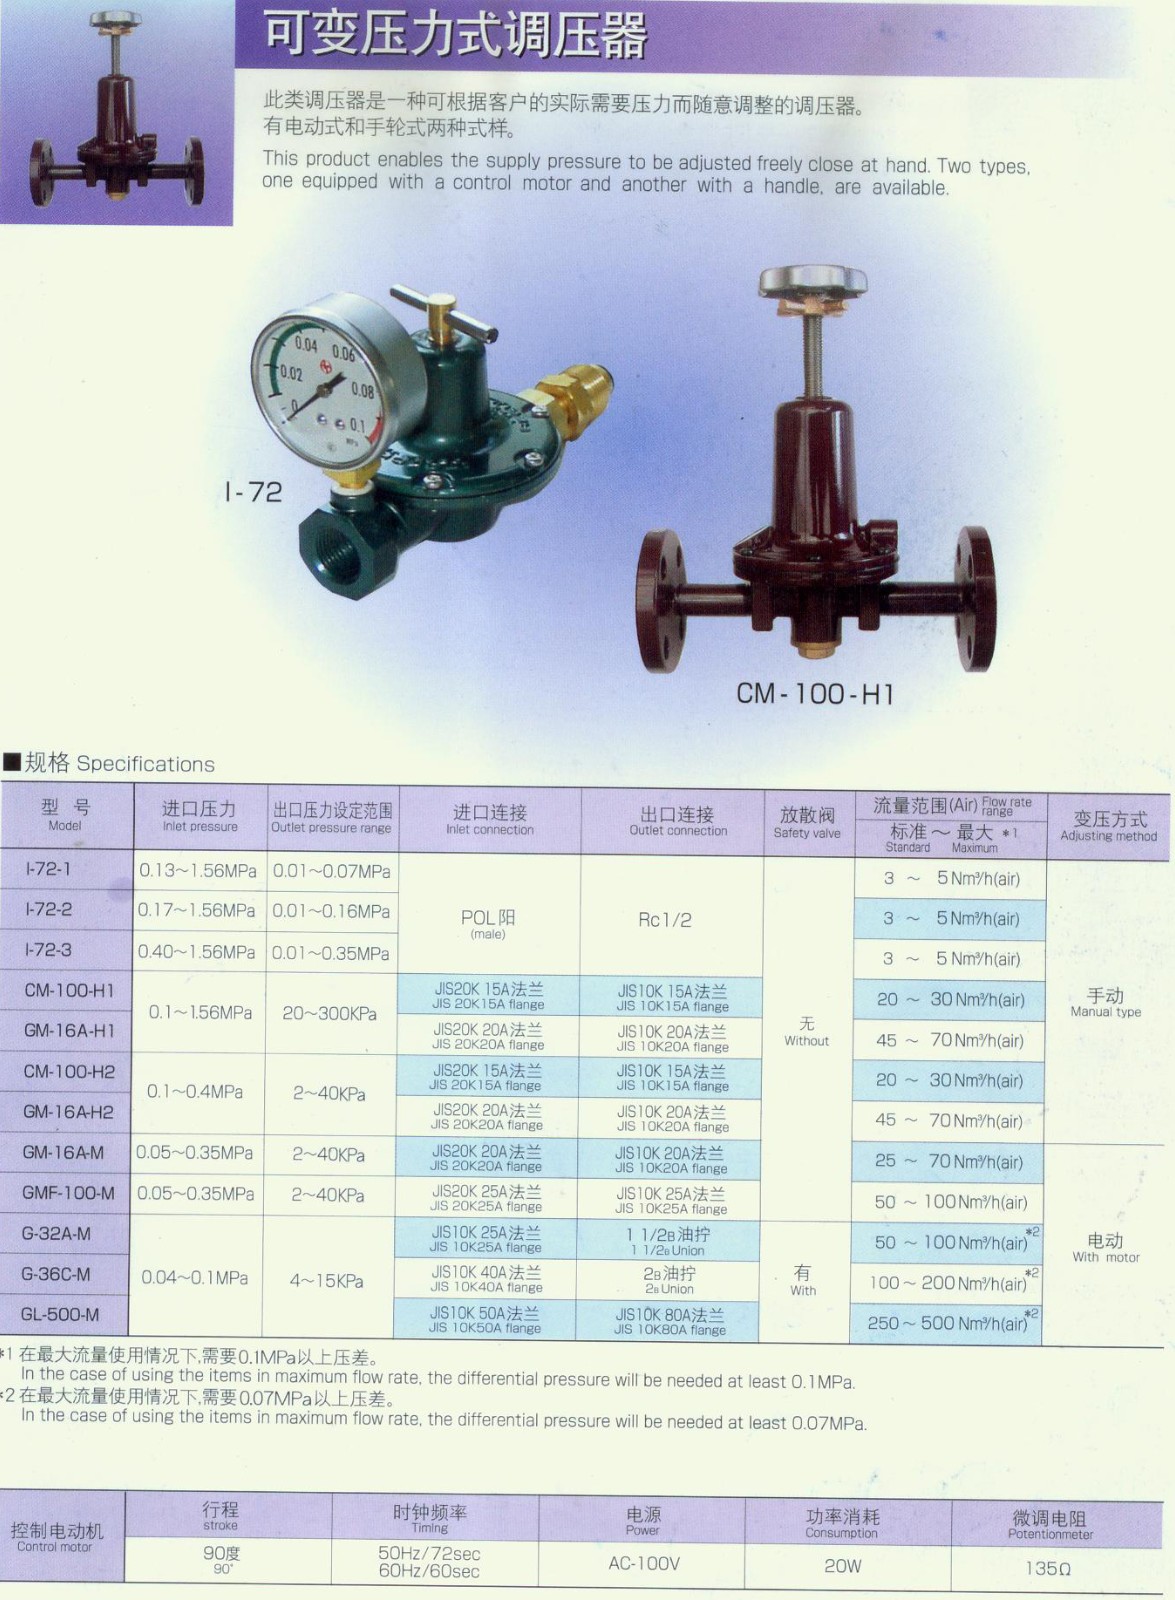 CM-100-H2可变压力式调压器.jpg